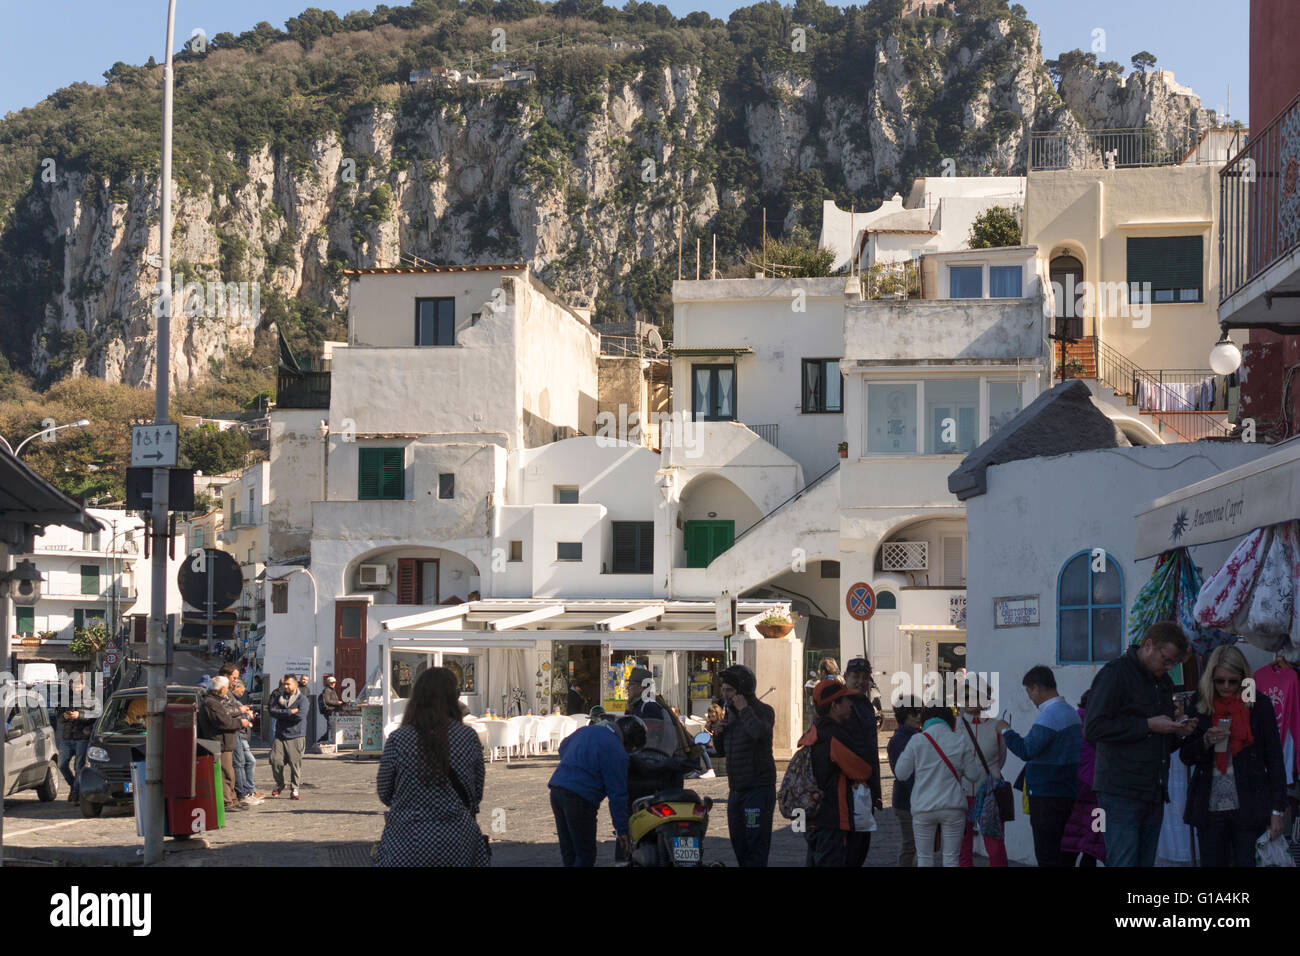 El sol de la mañana llega a los edificios blancos mediterráneos en el puerto de Marina Grande, donde los lugareños y turistas se mezclan. Isla de Capri, Italia Foto de stock